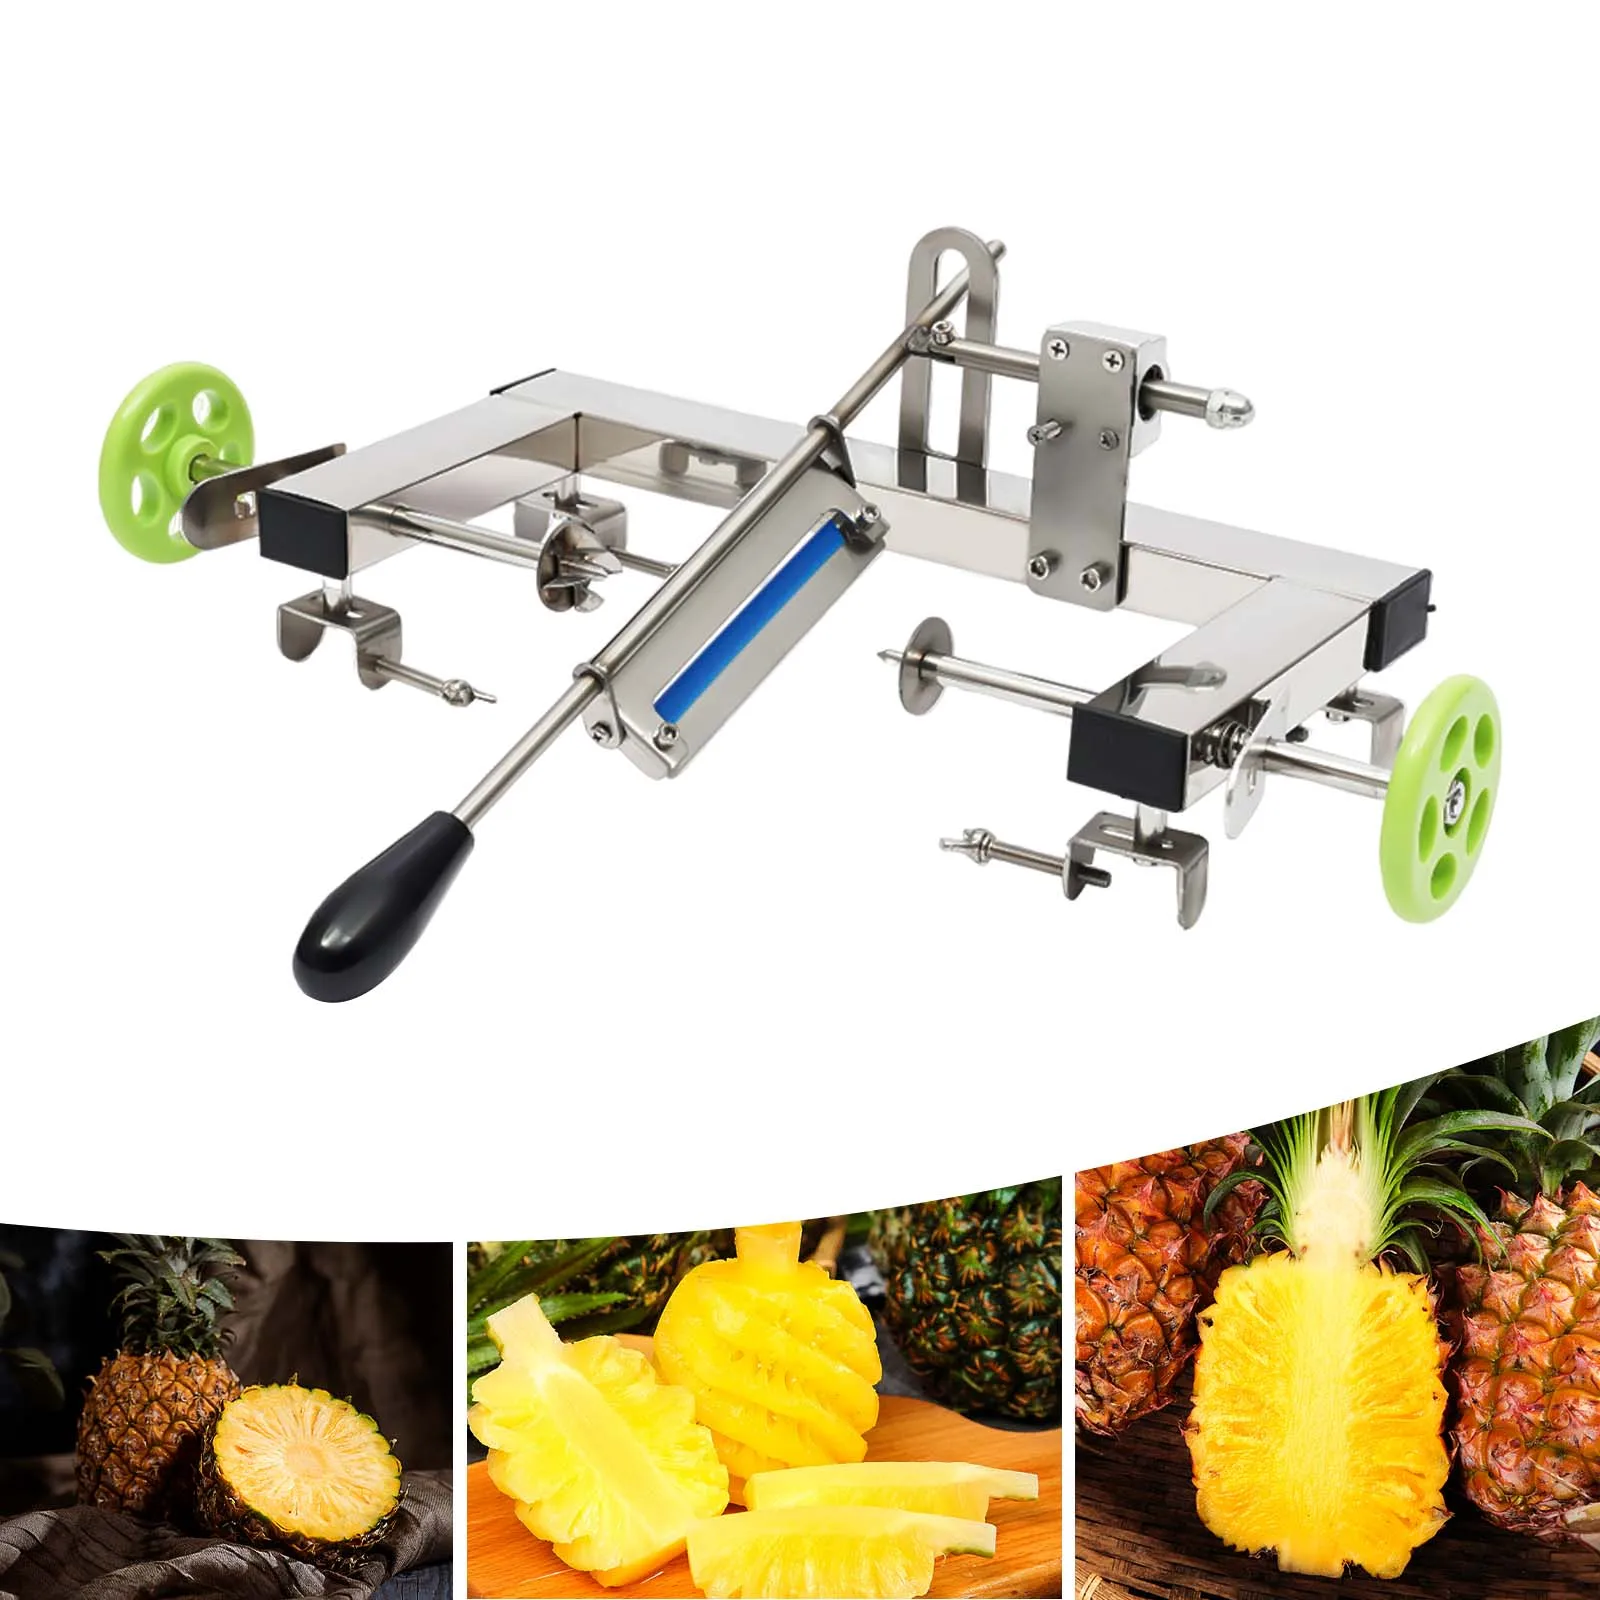 

Easy Kitchen Skin Peeling Tool Pineapple Peeler Machine Kit Fruit Pineapple Slicer Cutter Peeler Stainless Steel Tool